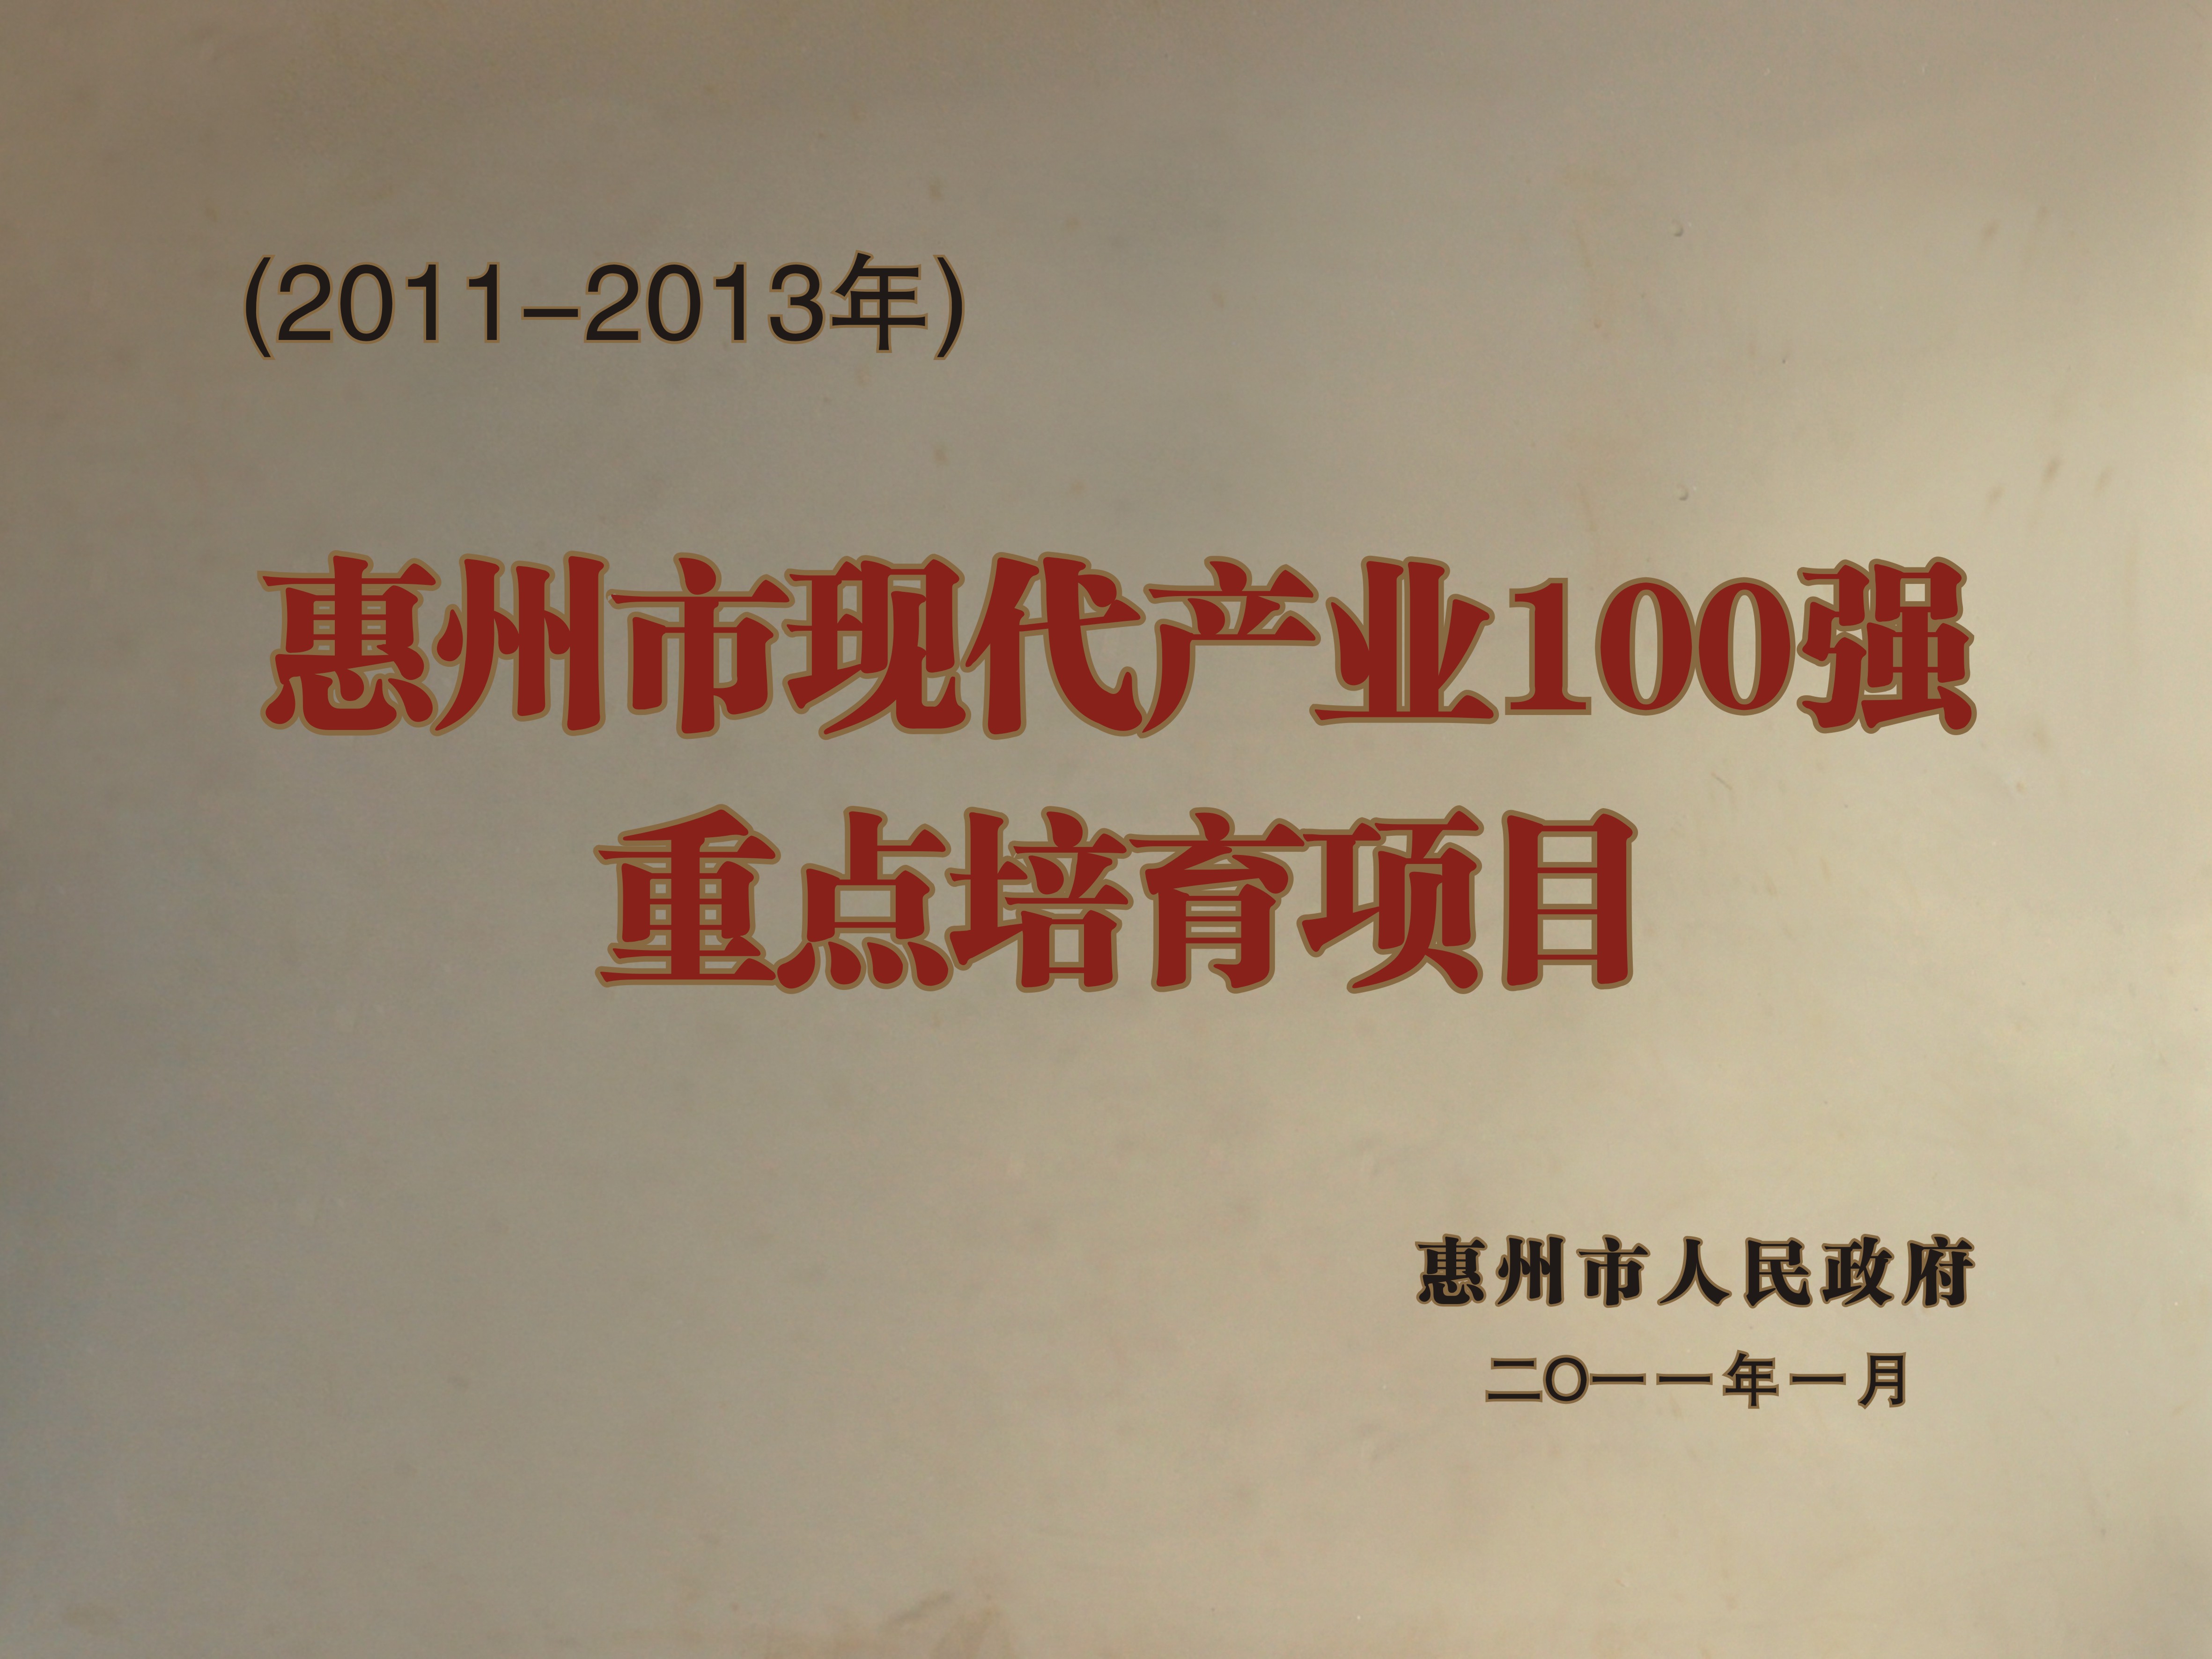 -2011-2013年惠州市现代产业100强重点培育项目